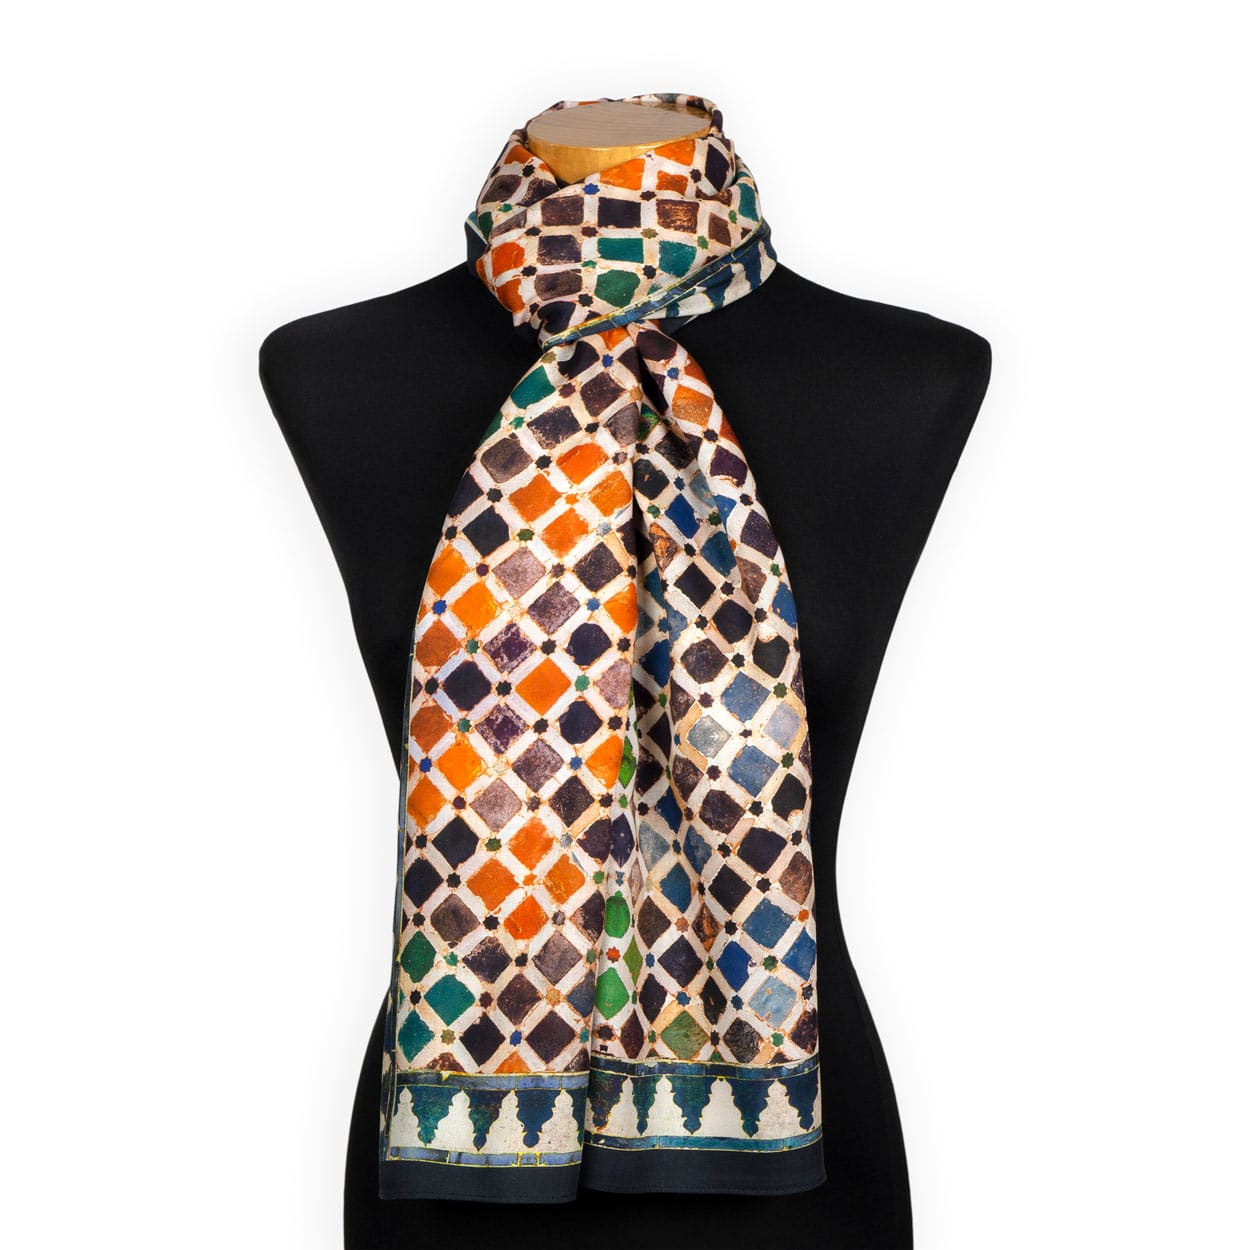 Pañuelo estampado multicolor para el cuello con mosaicos de azulejos